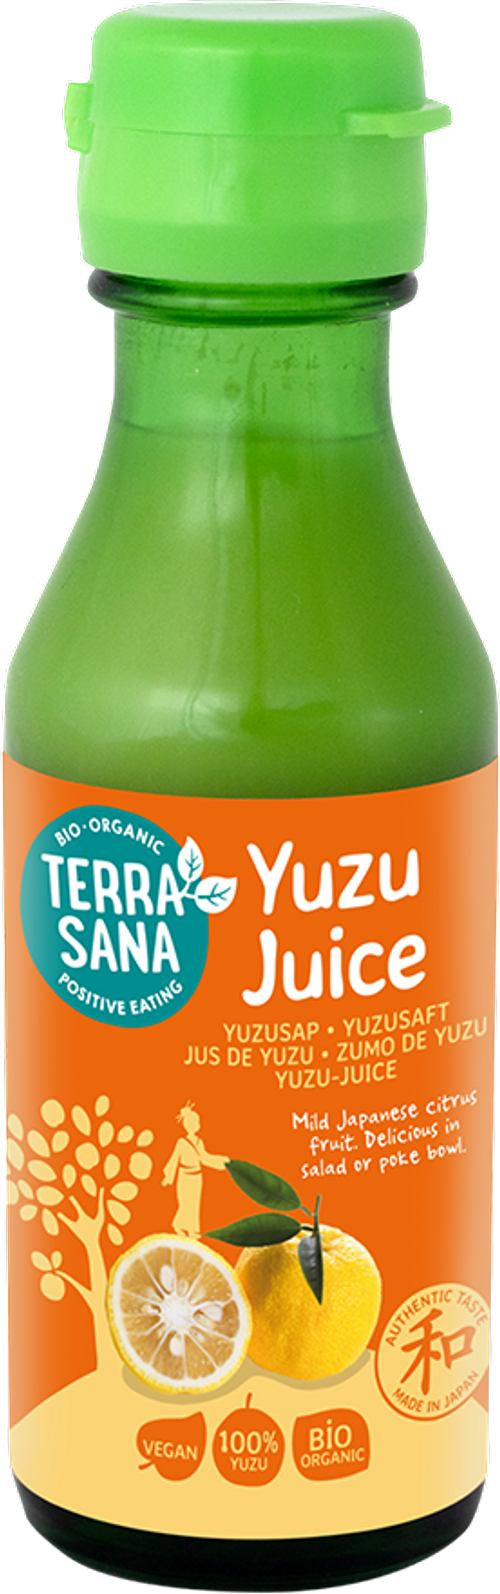 Pure Yuzu Juice by Yuzuya Honten – TOIRO